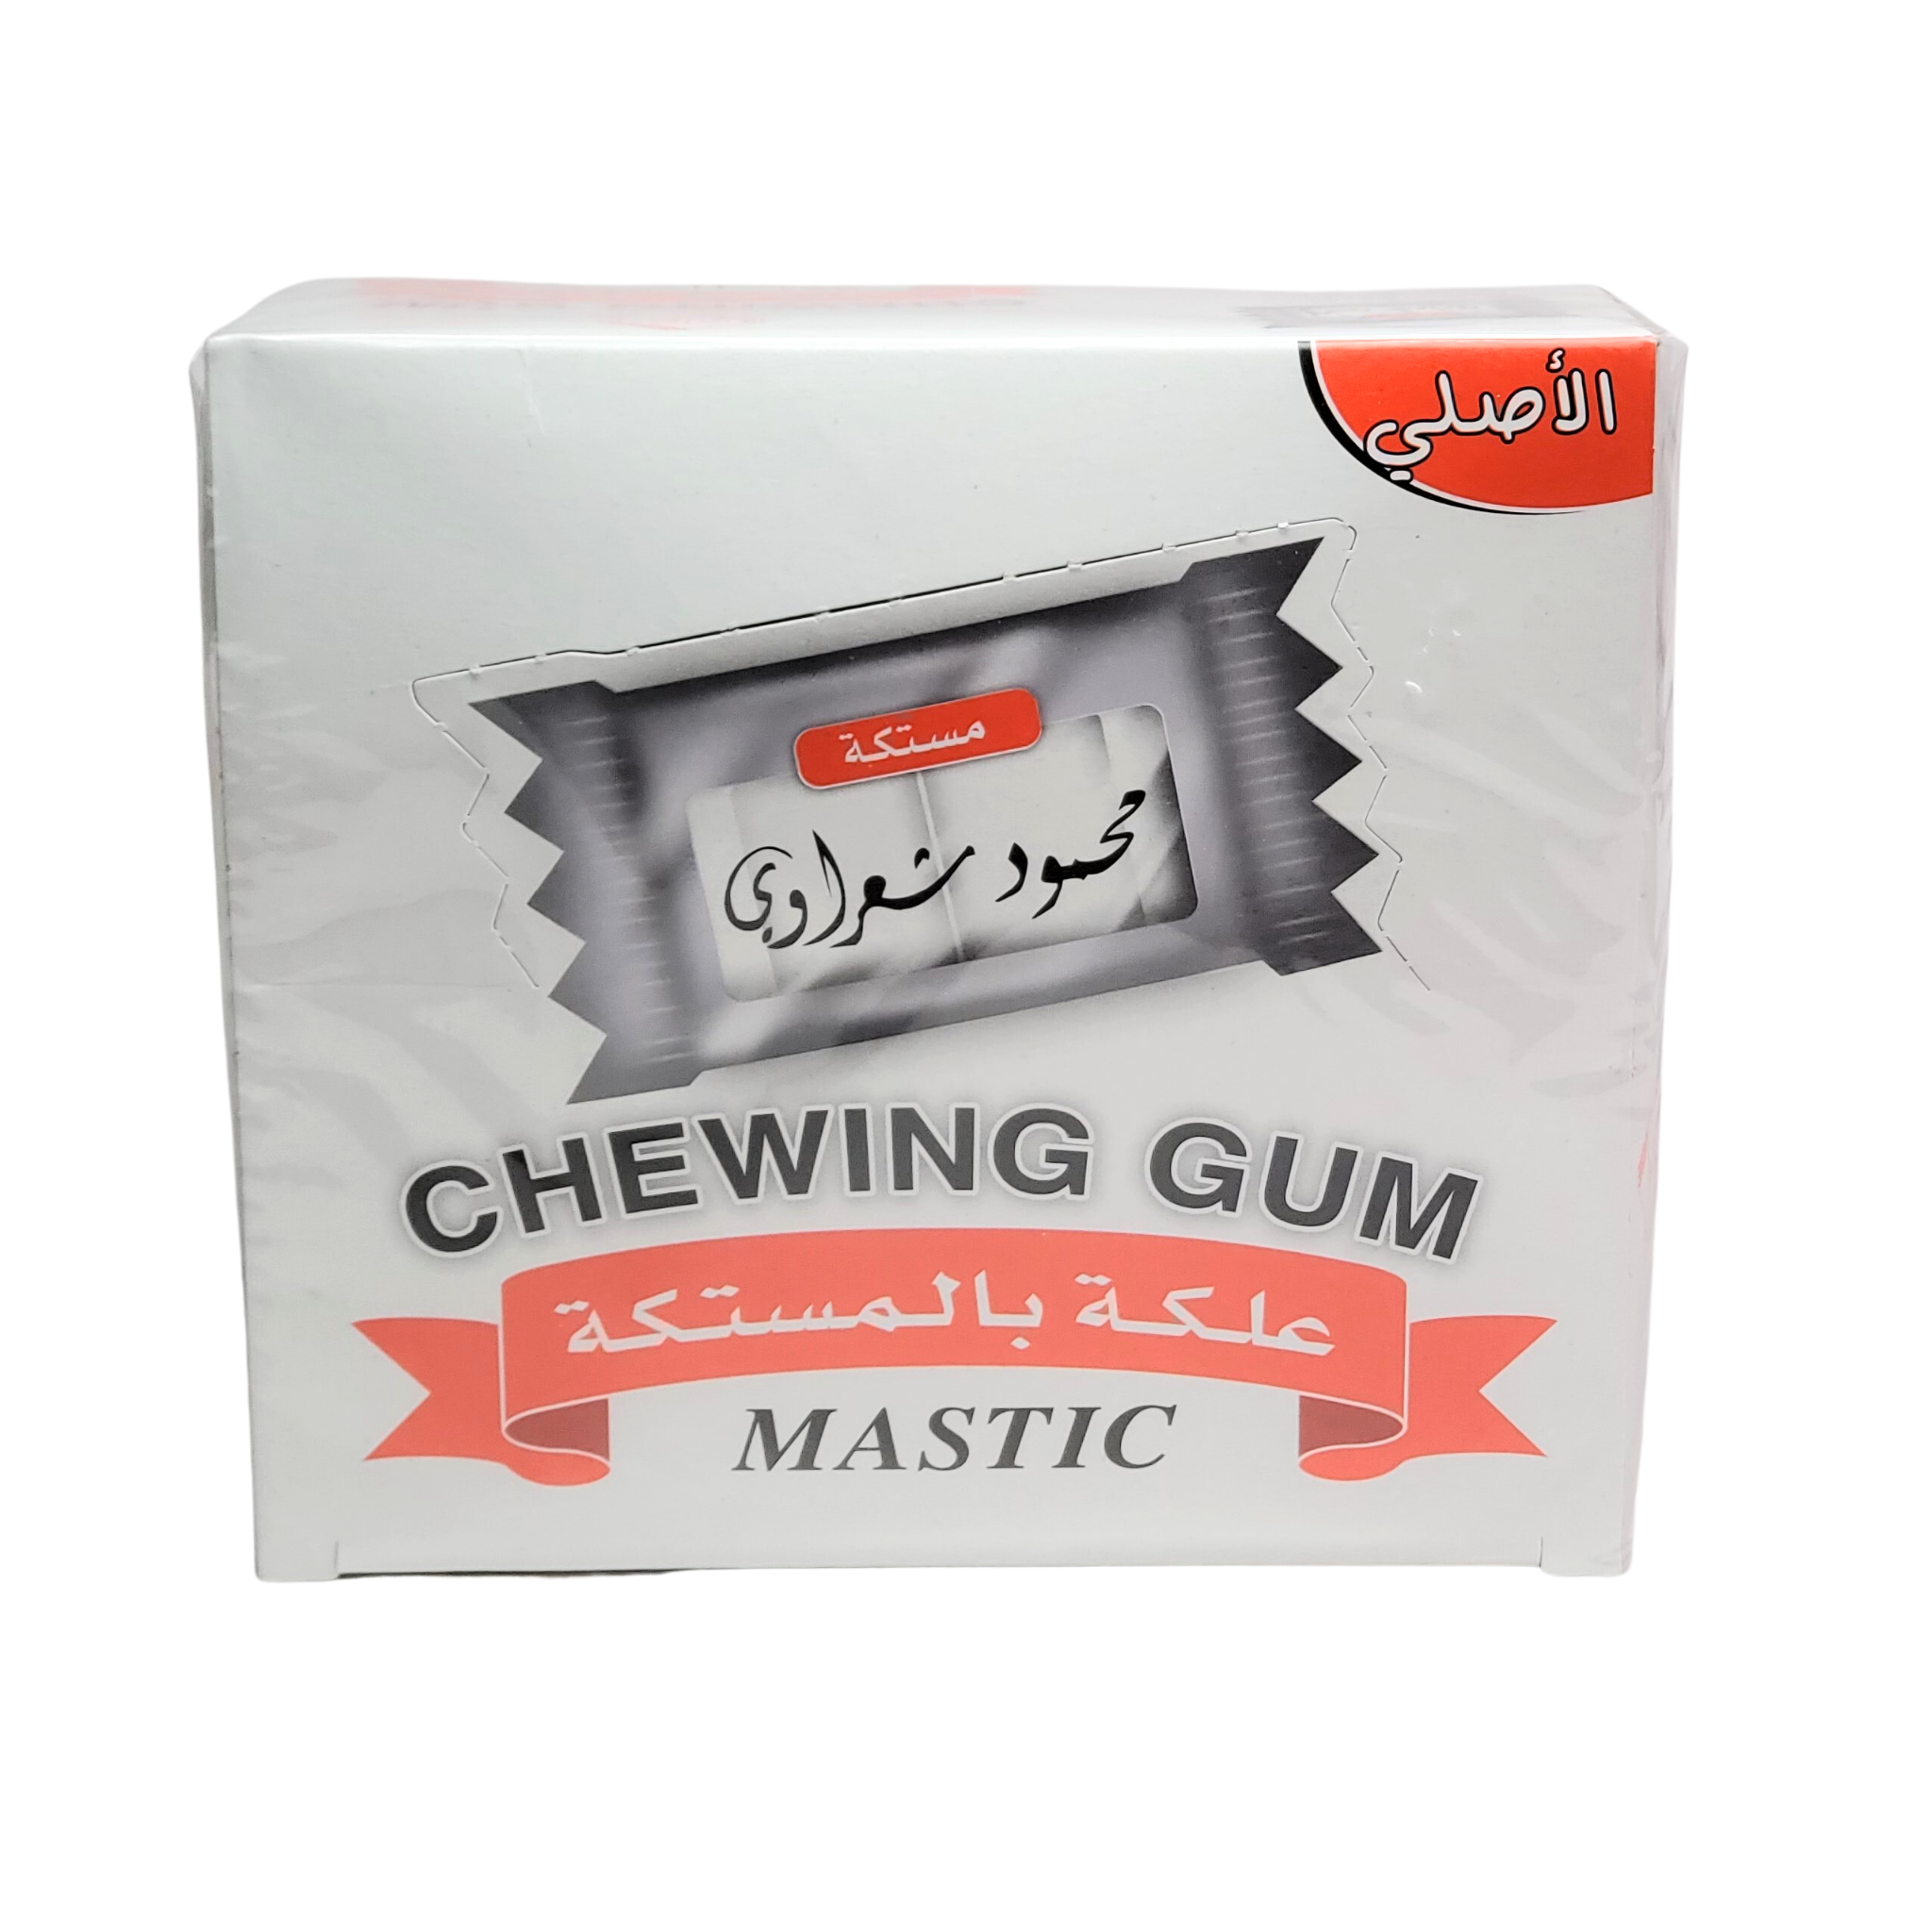 Chewing Gum Mastic Mahmoud Shaarawi